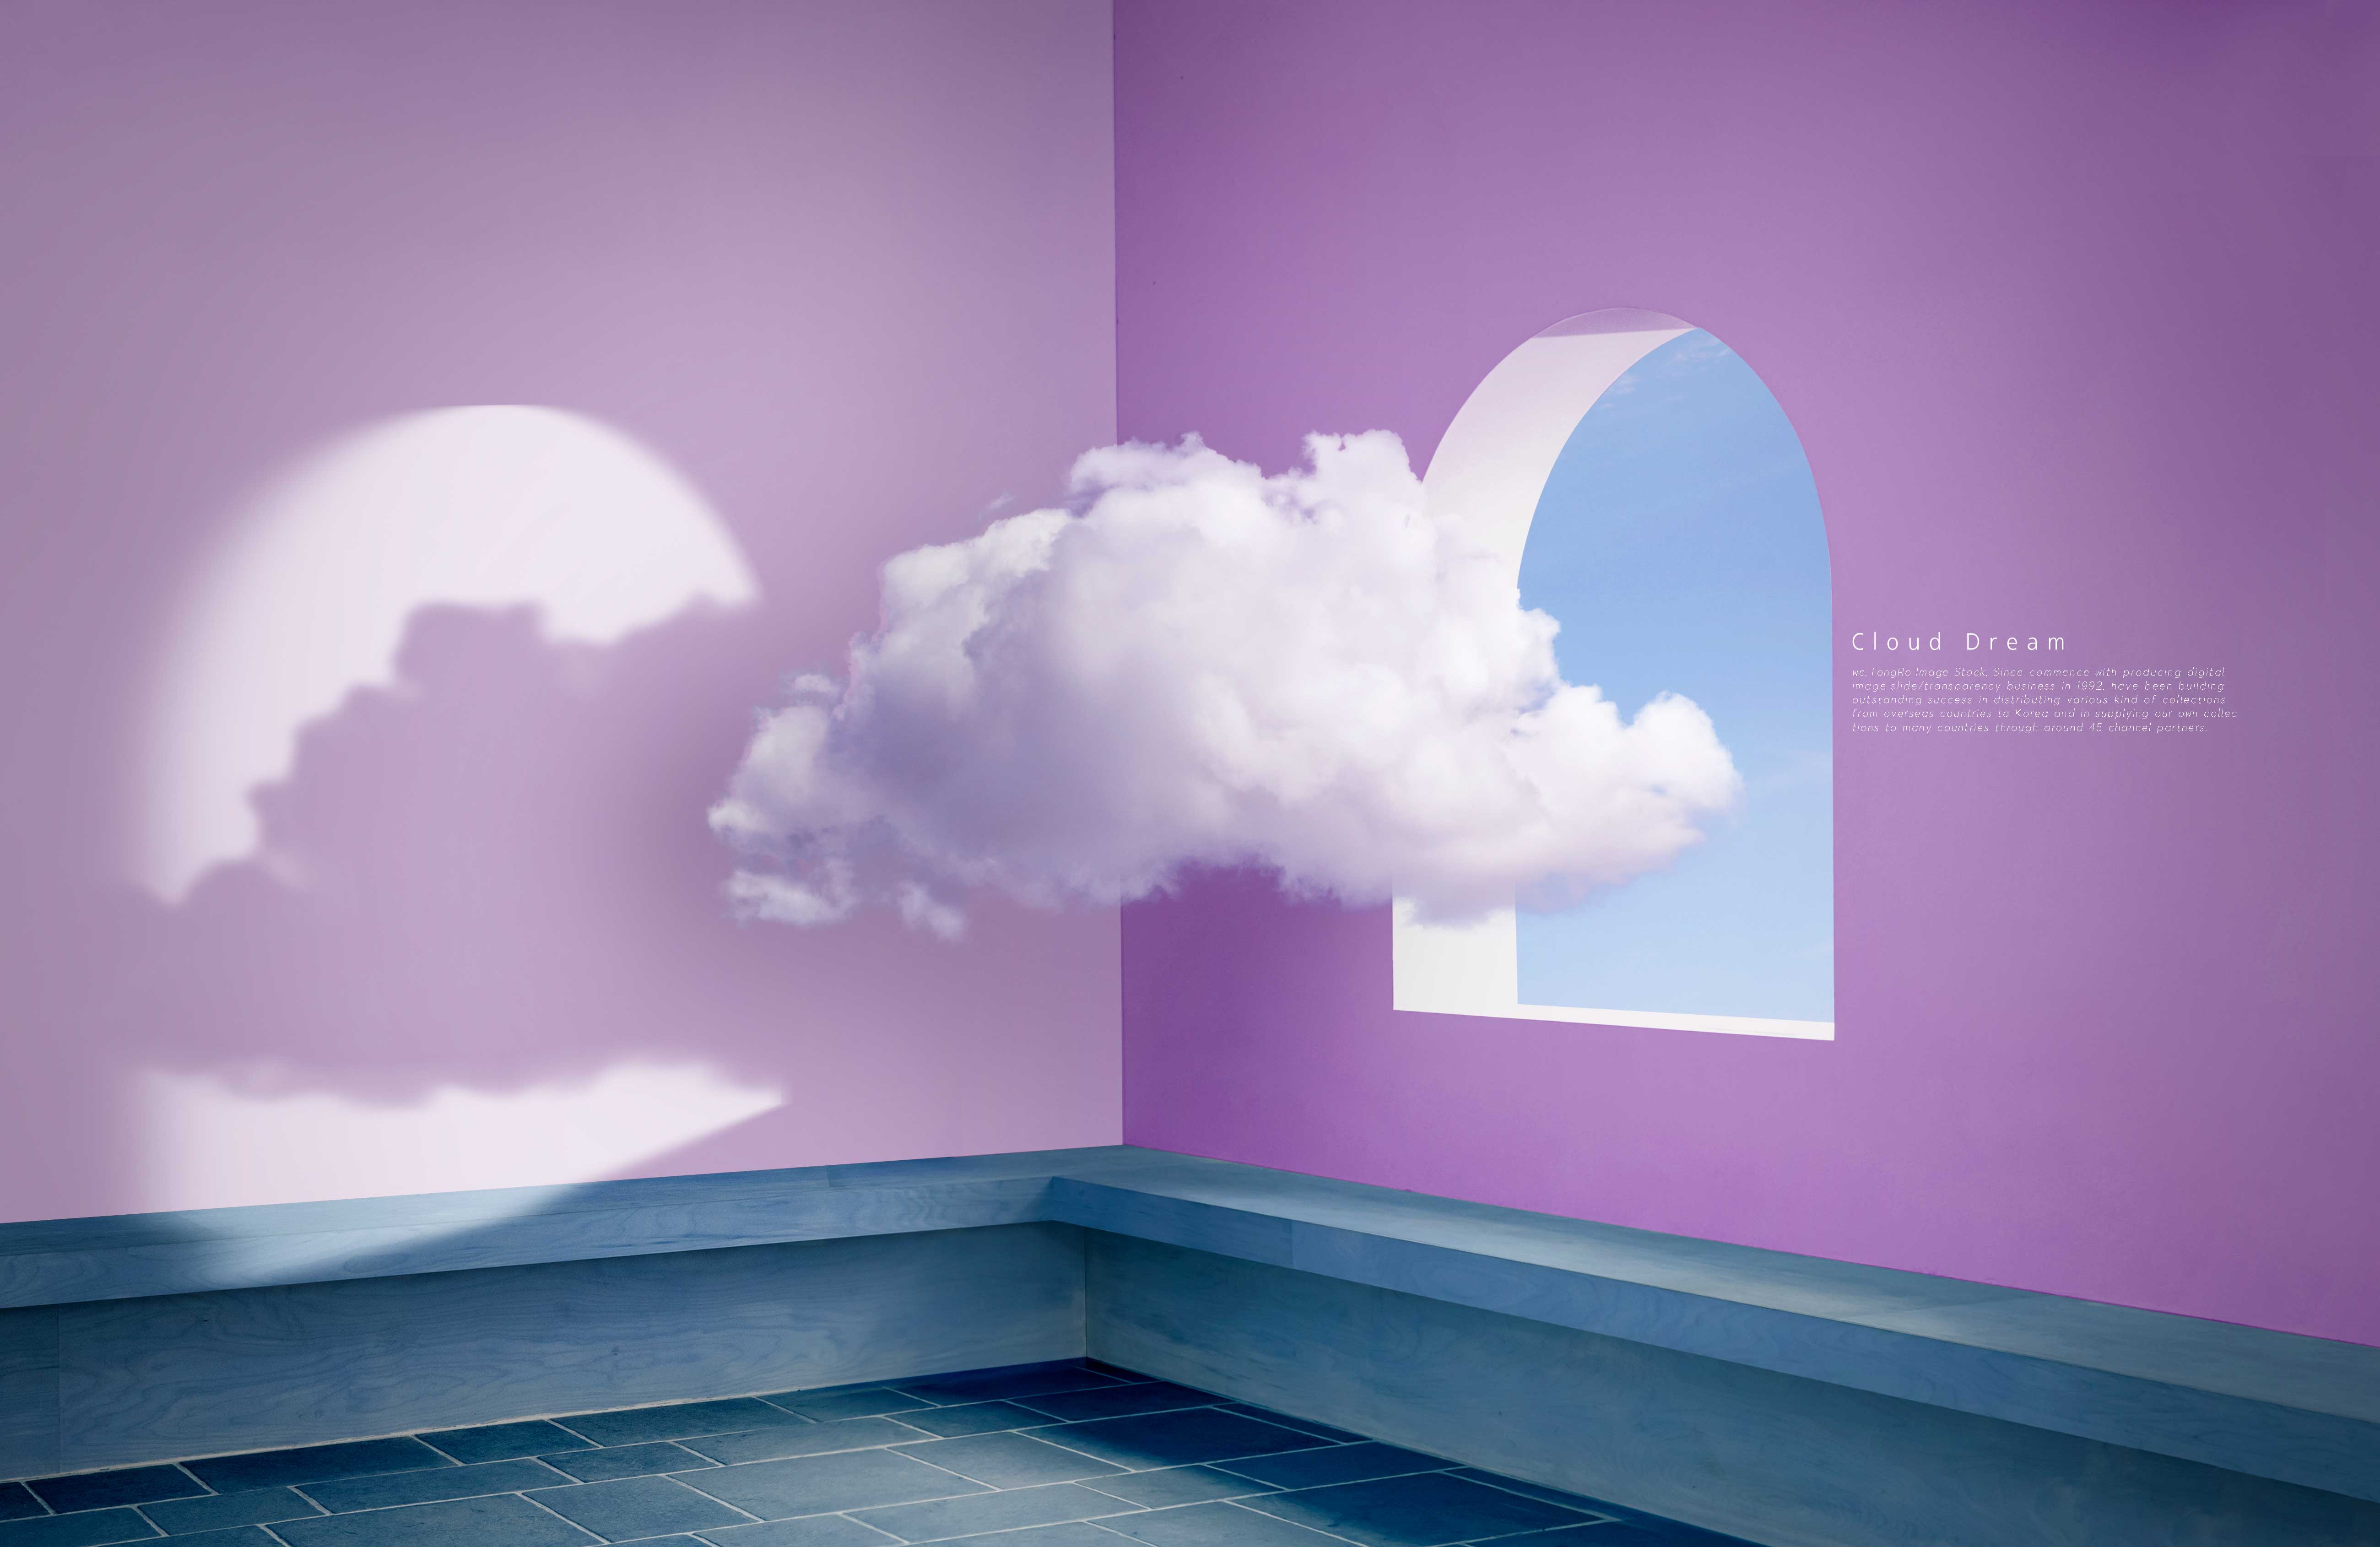 云层梦境抽象空间主题图形psd素材设计素材模板